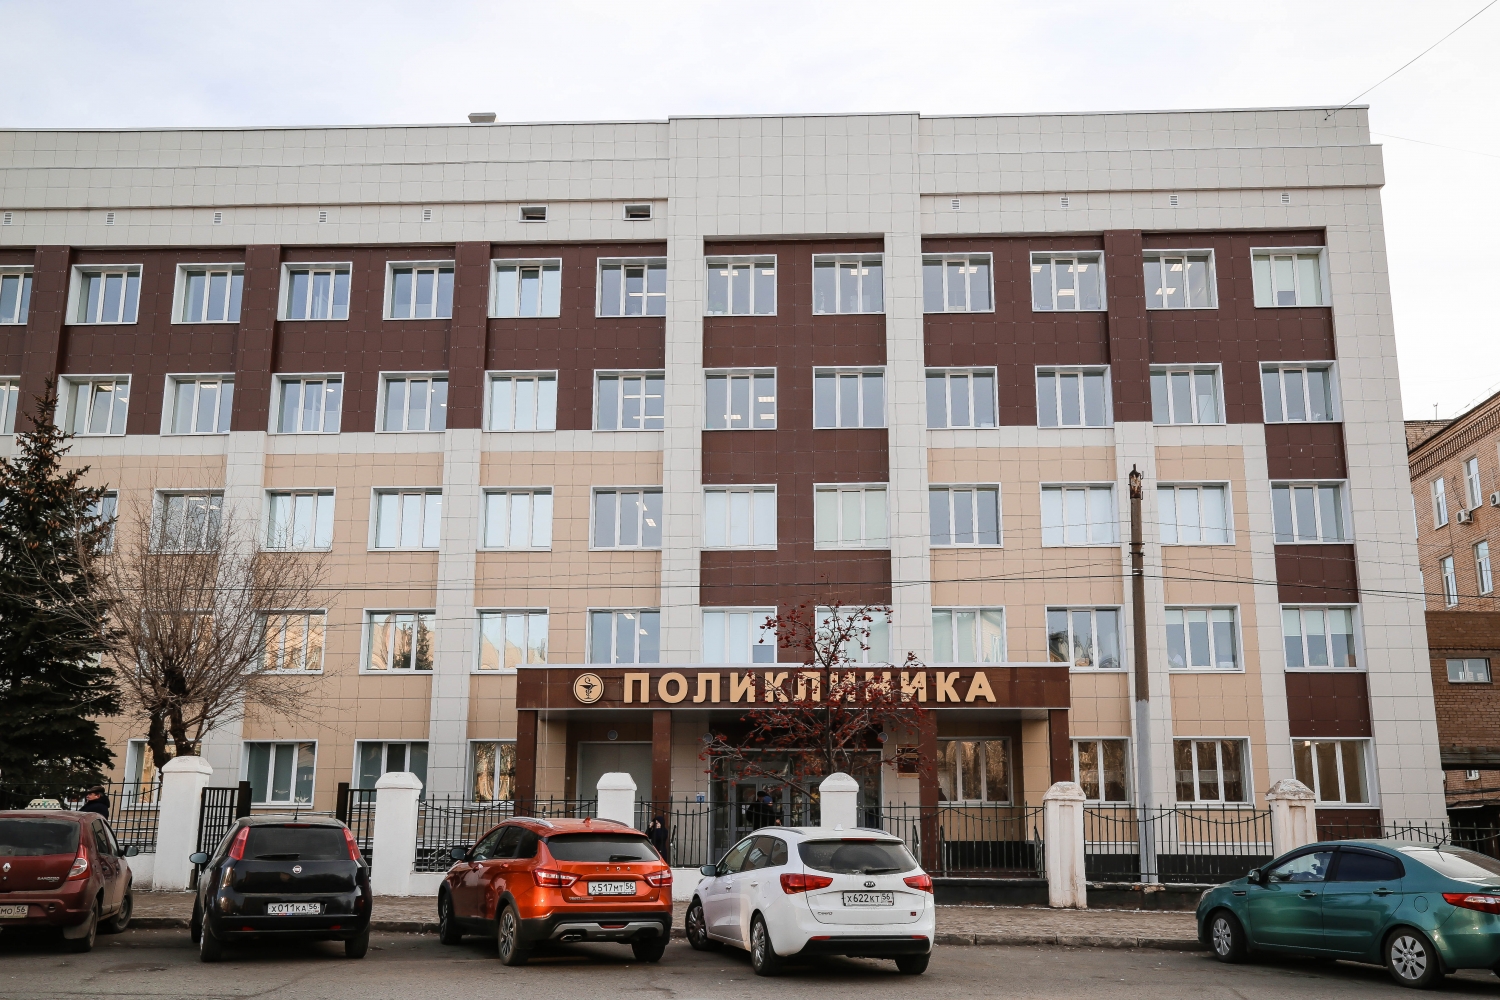 1 гор больница оренбург